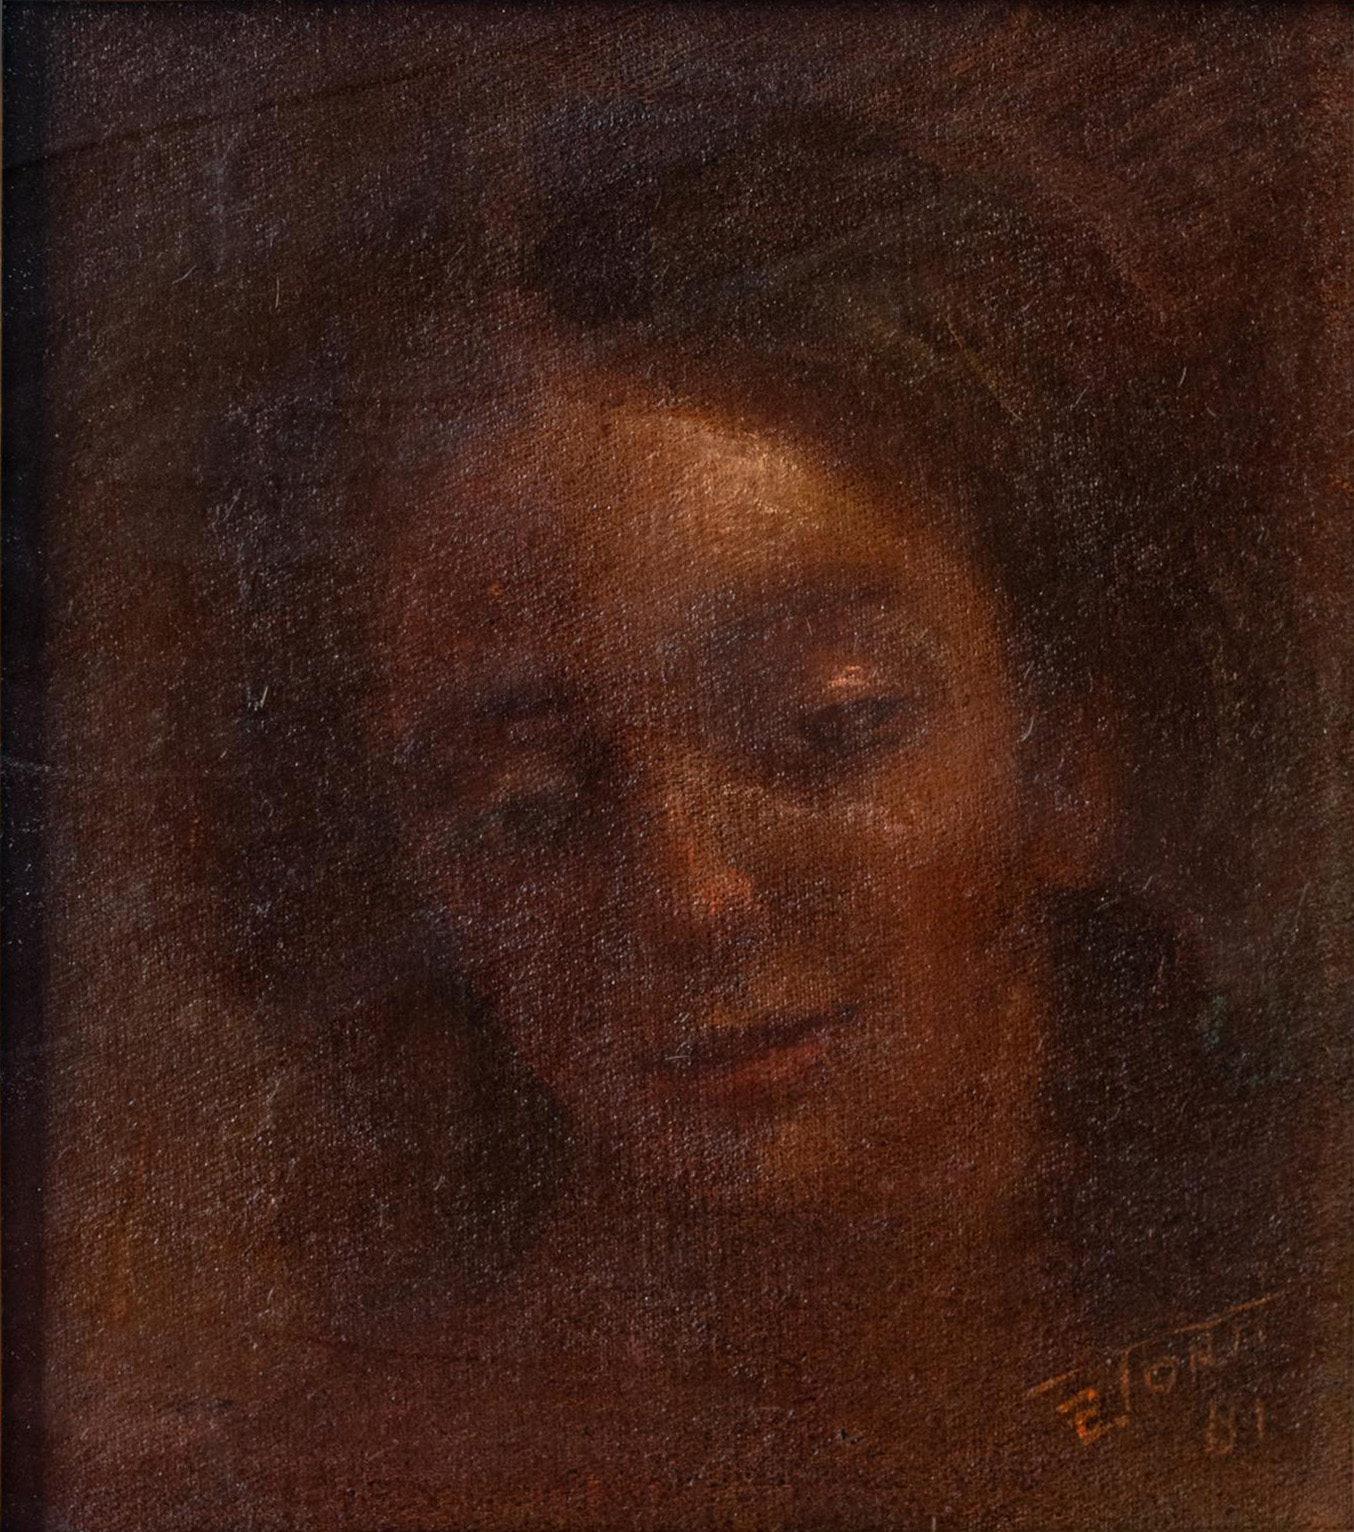 Senza titolo - Torti - olio su tela, 1981, 33x28